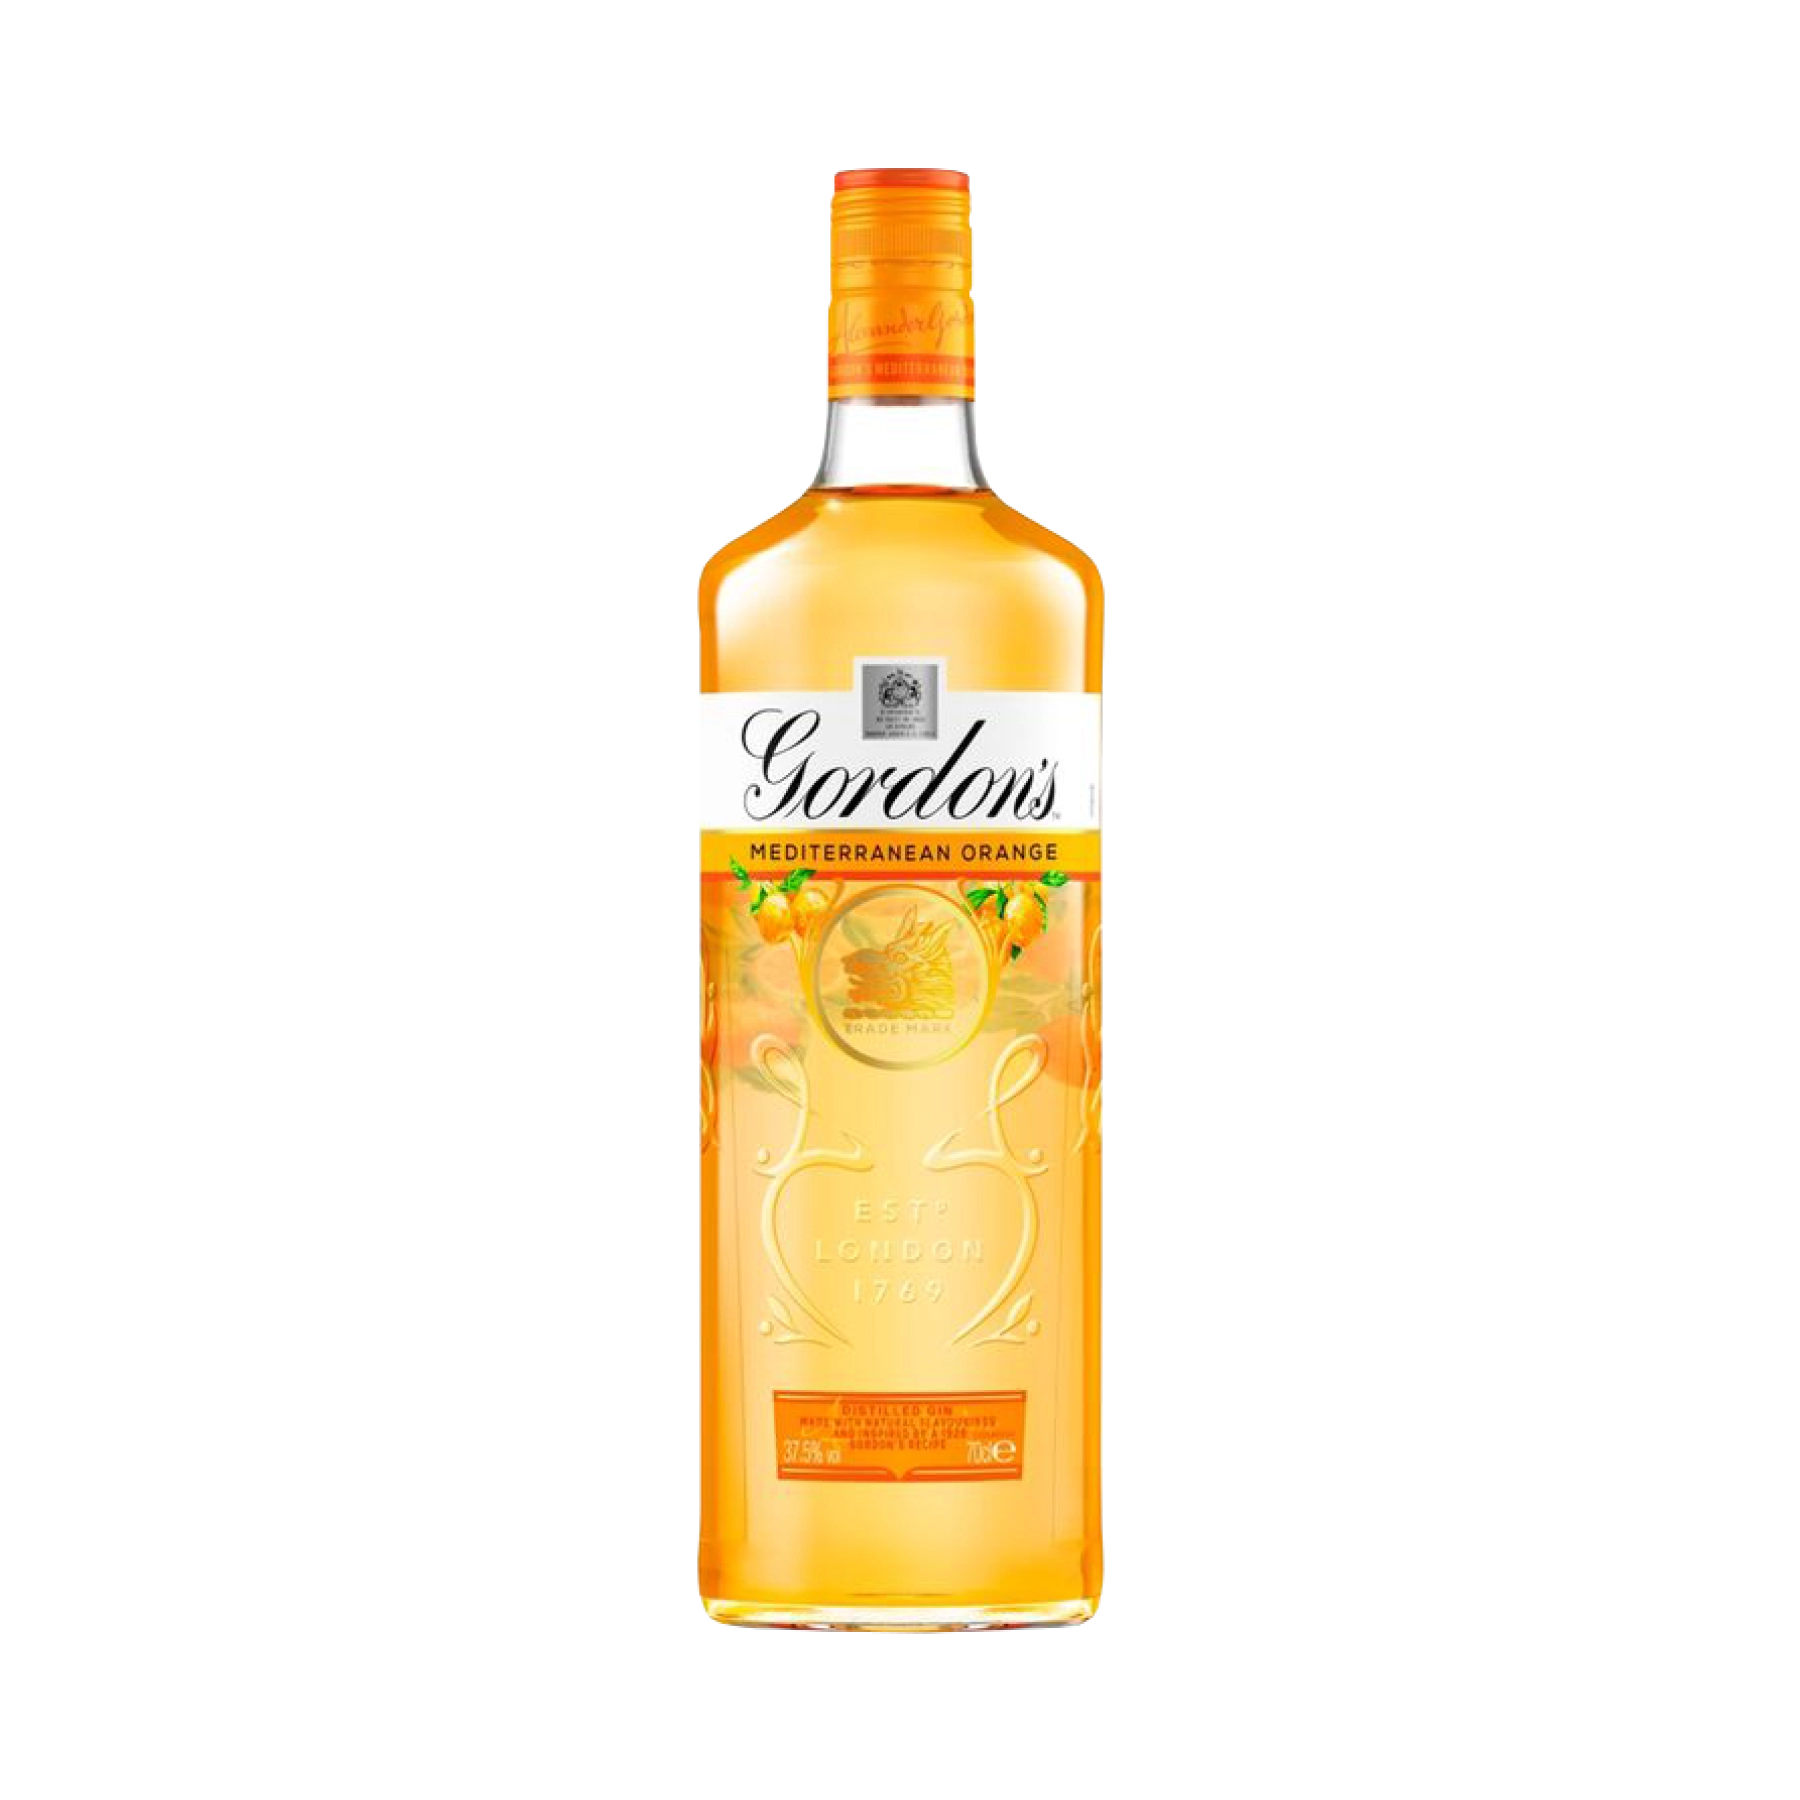 Rượu Gin Anh Quốc Gordon's Mediterranean Orange